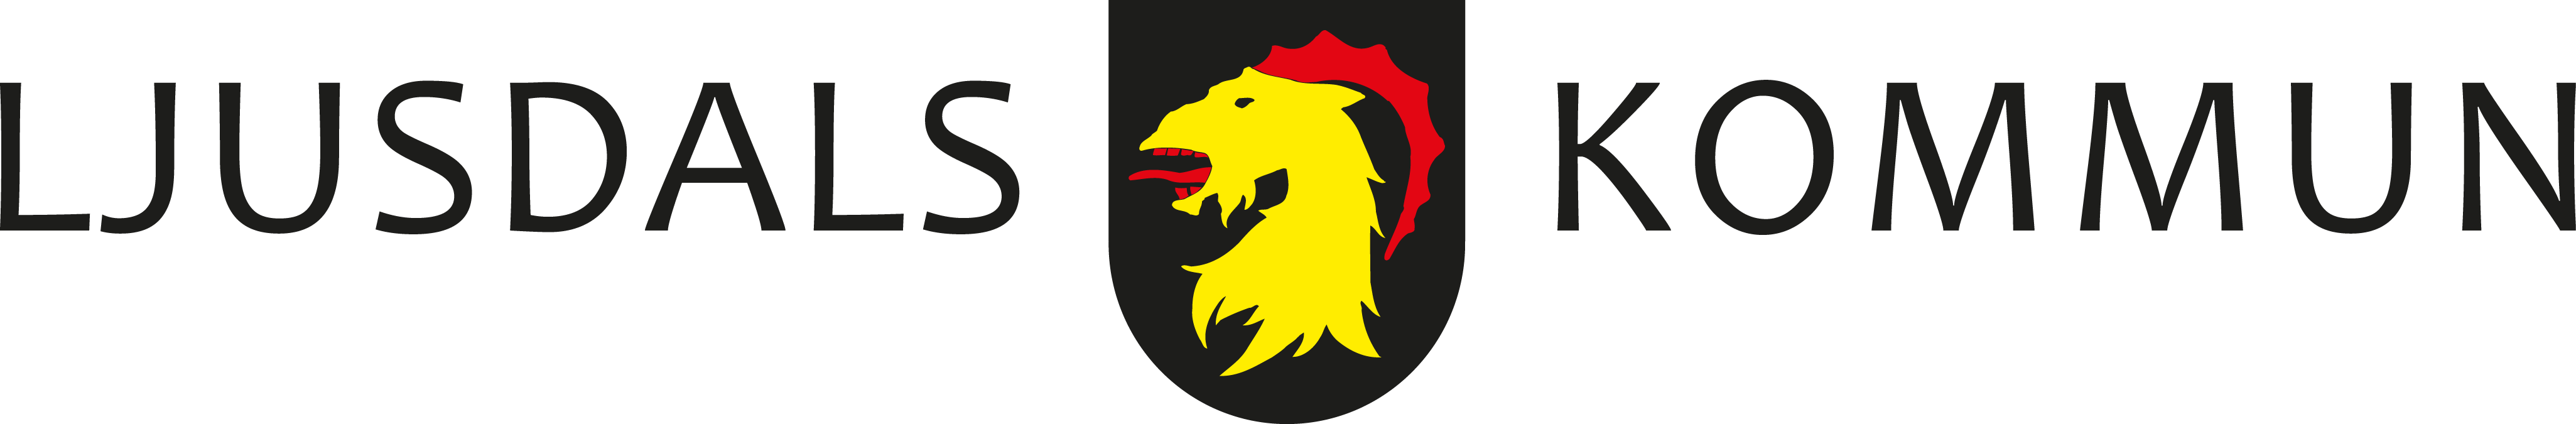 Ljusdals kommuns logga i färg